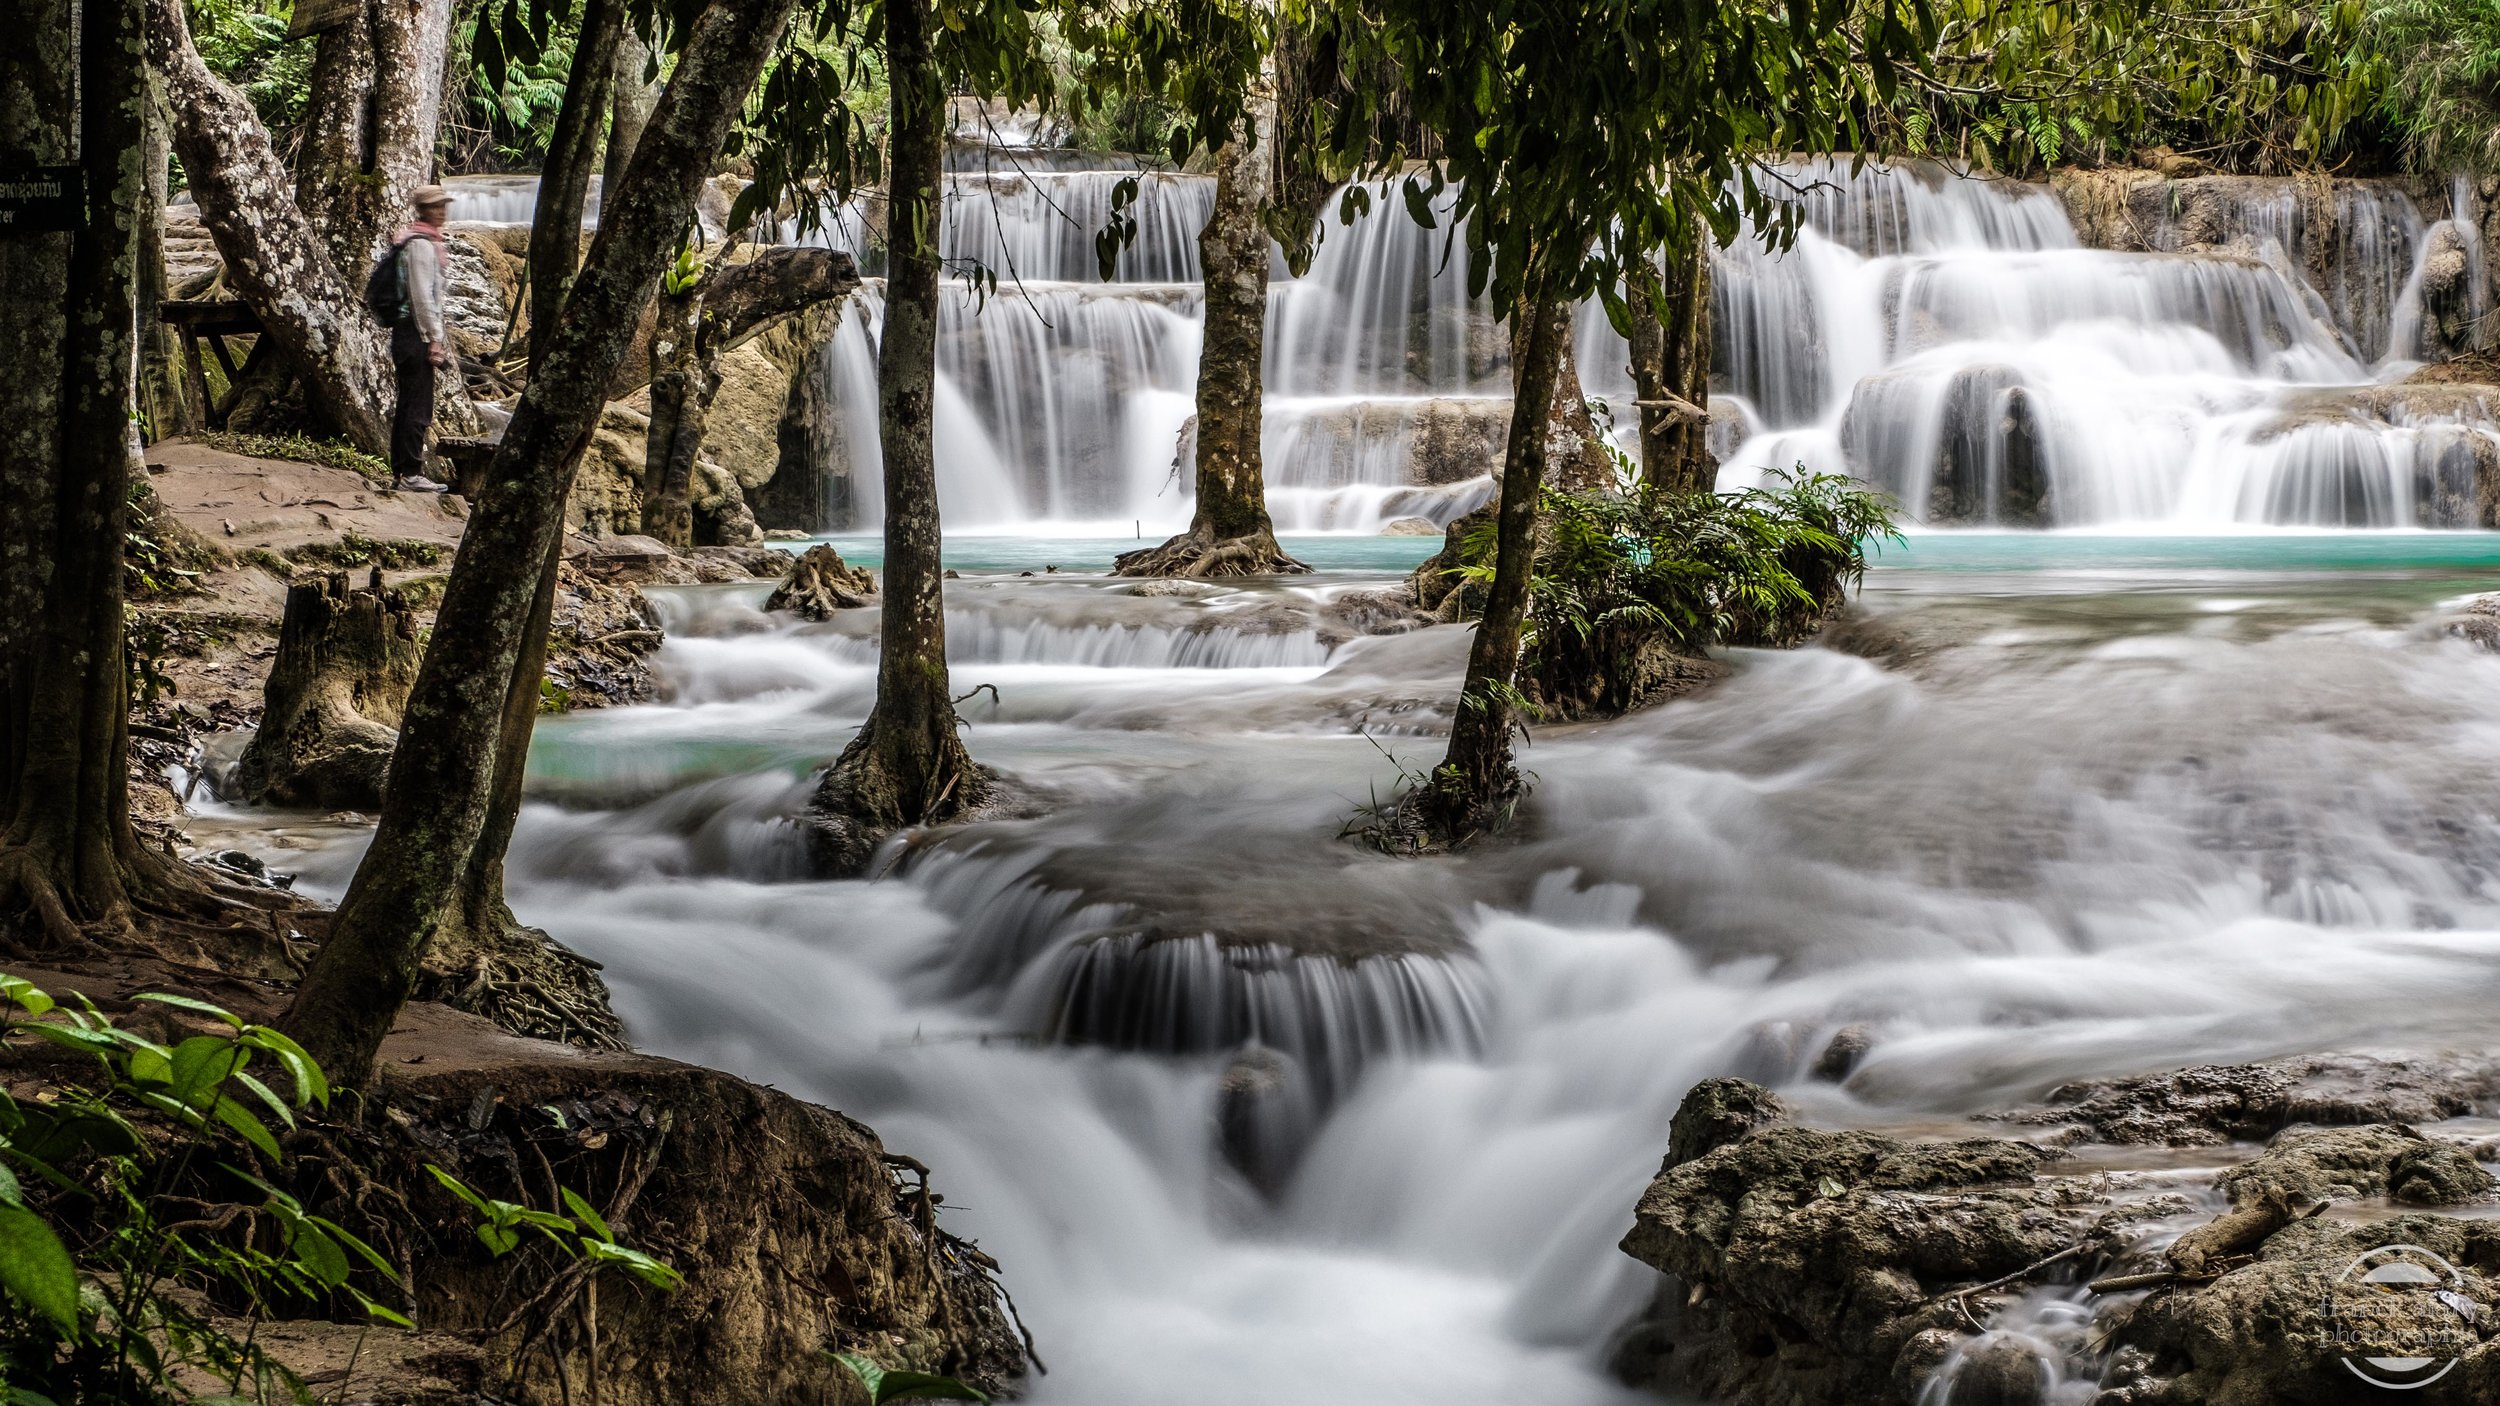   Cascades de Kuang Si   Situées à une trentaine de kilomètres de Luang Prabang, les cascades de Kuang Si forment des bassins et piscines naturelles au sein d'une végétation tropicale luxuriante. L'endroit &nbsp;est touristique et très fréquenté. Il 